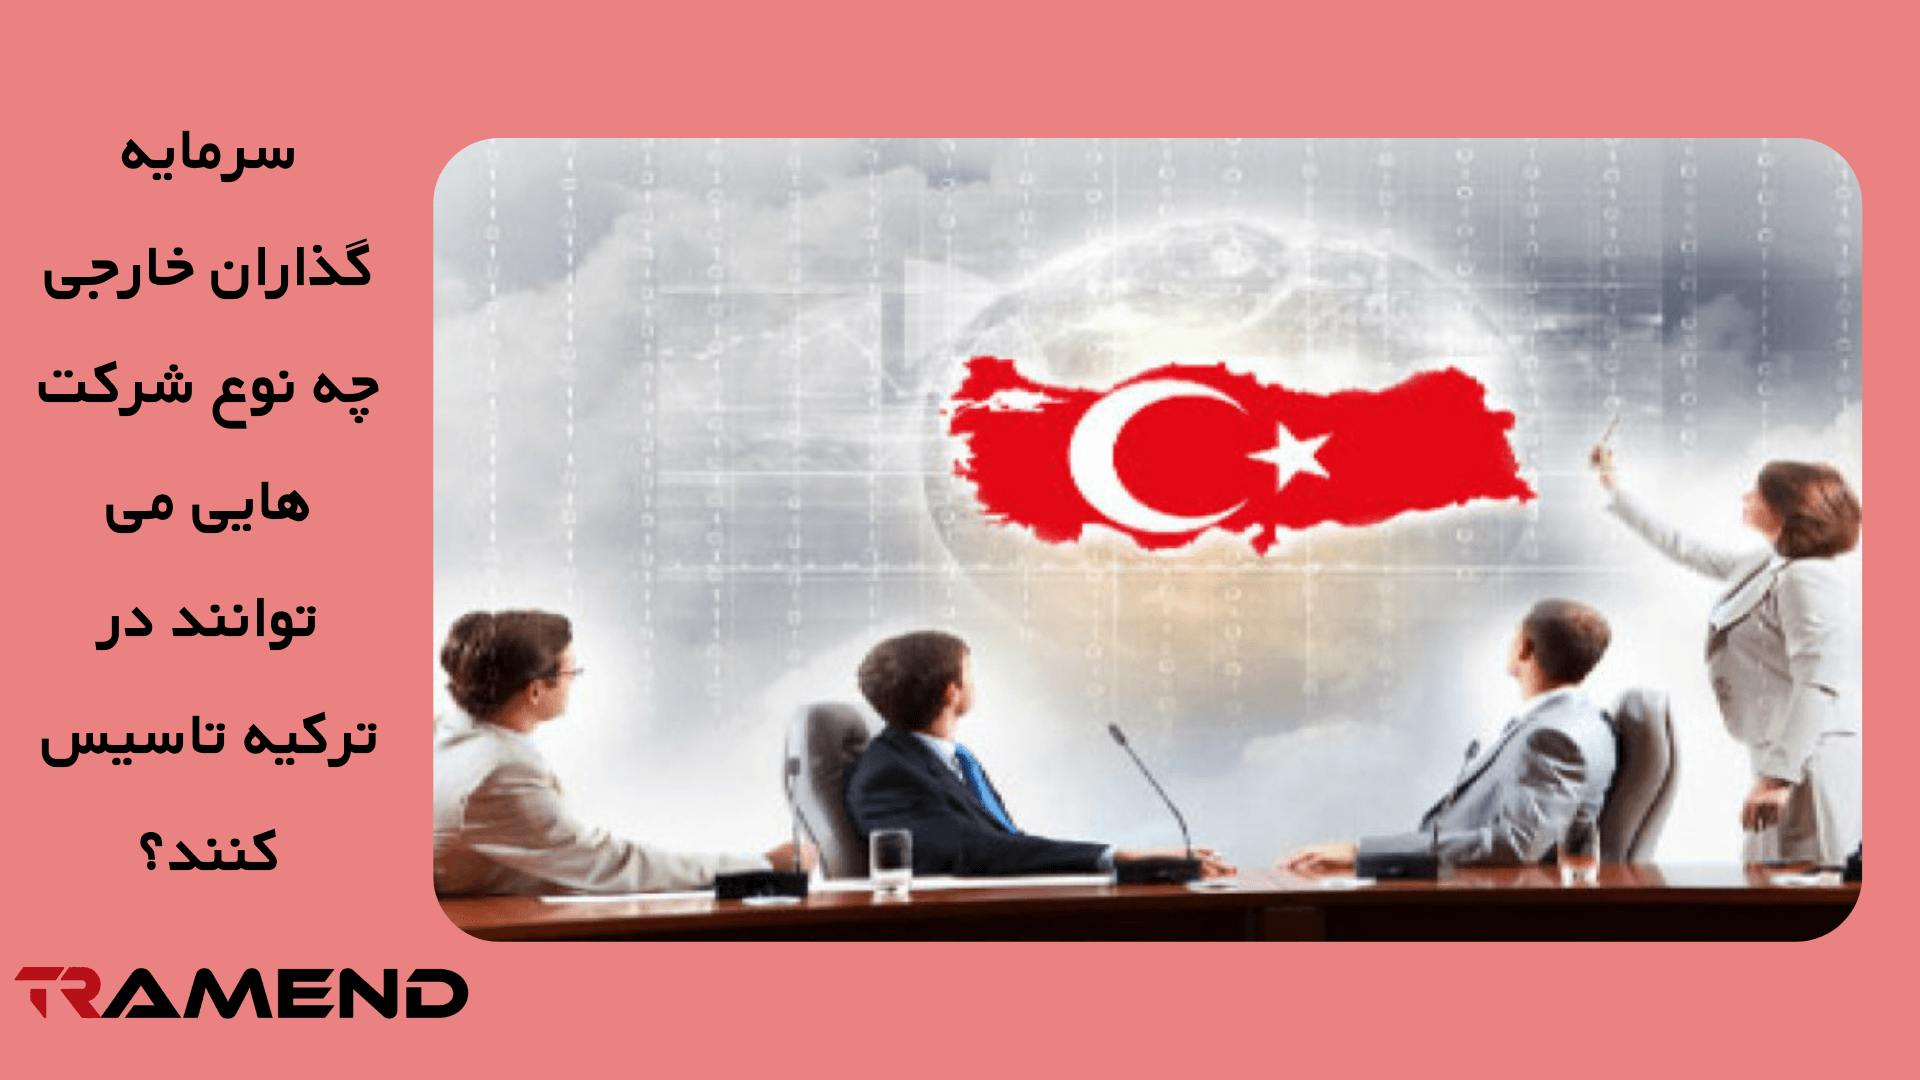 سرمایه گذاران خارجی چه نوع شرکت هایی می توانند در ترکیه تاسیس کنند؟